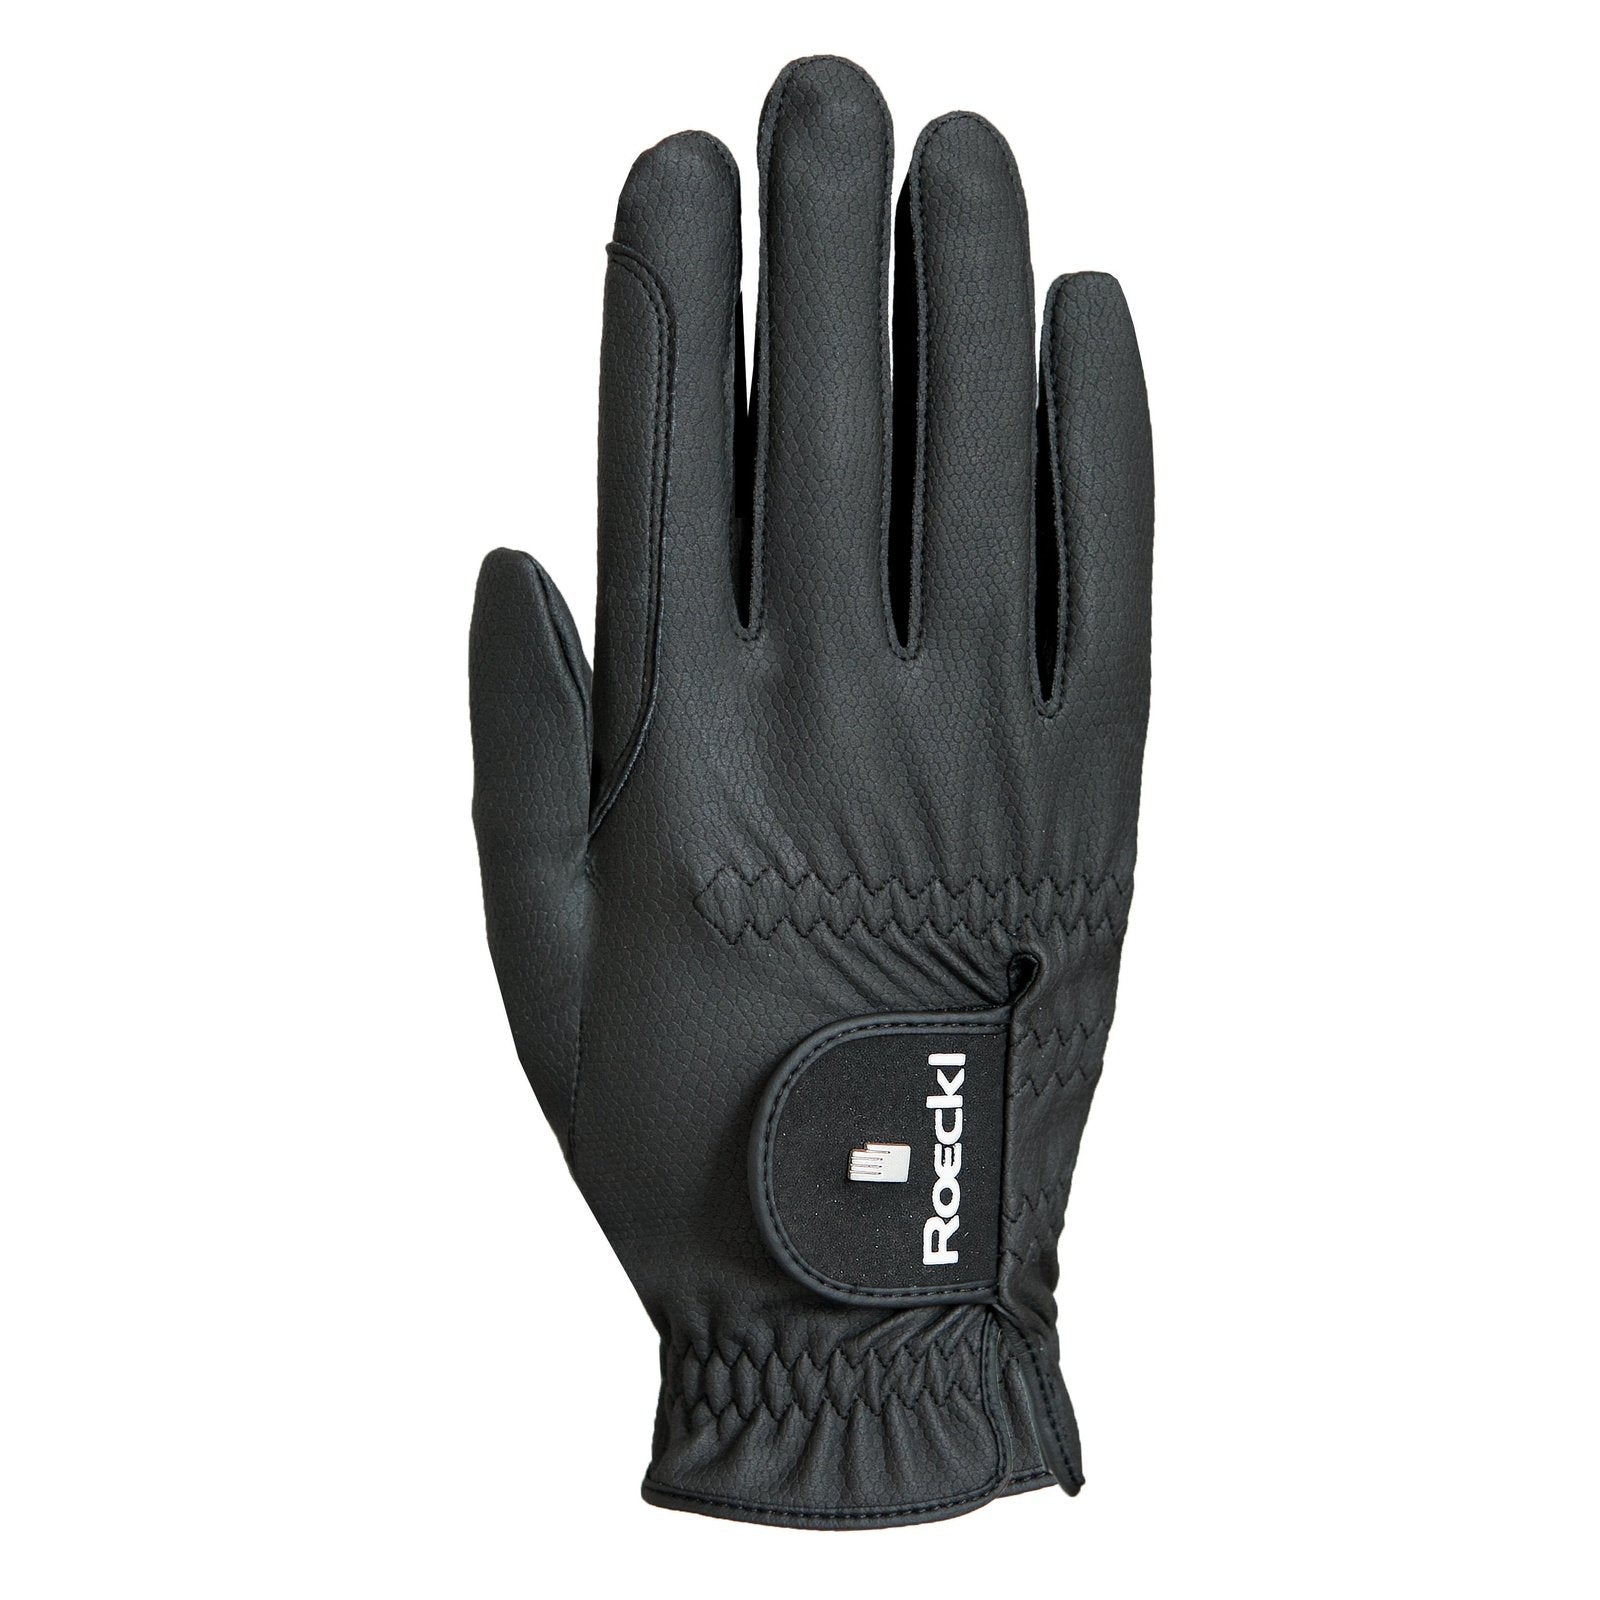 Roeckl Handschuhe Roeck-Grip Pro bei SP-Reitsport